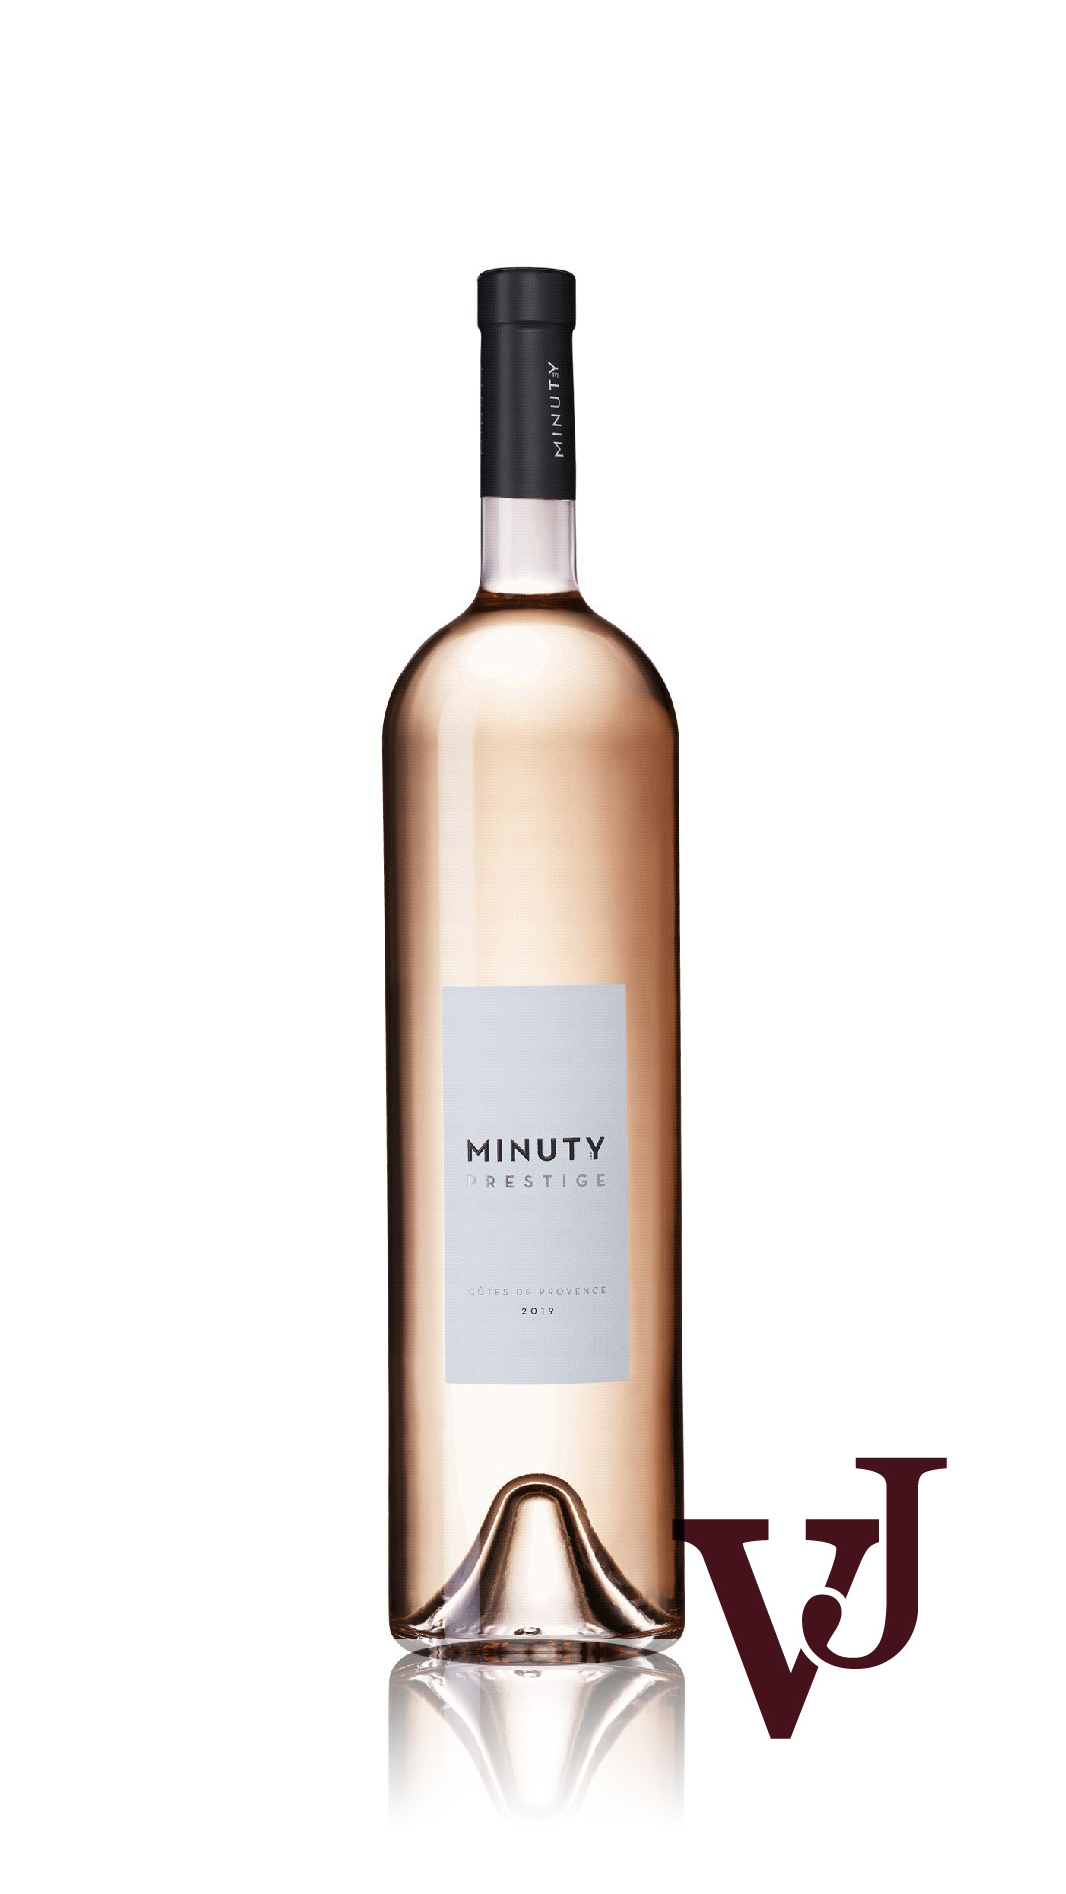 Rosé Vin - Minuty Prestige Rosé artikel nummer 7935306 från producenten Château Minuty från området Frankrike